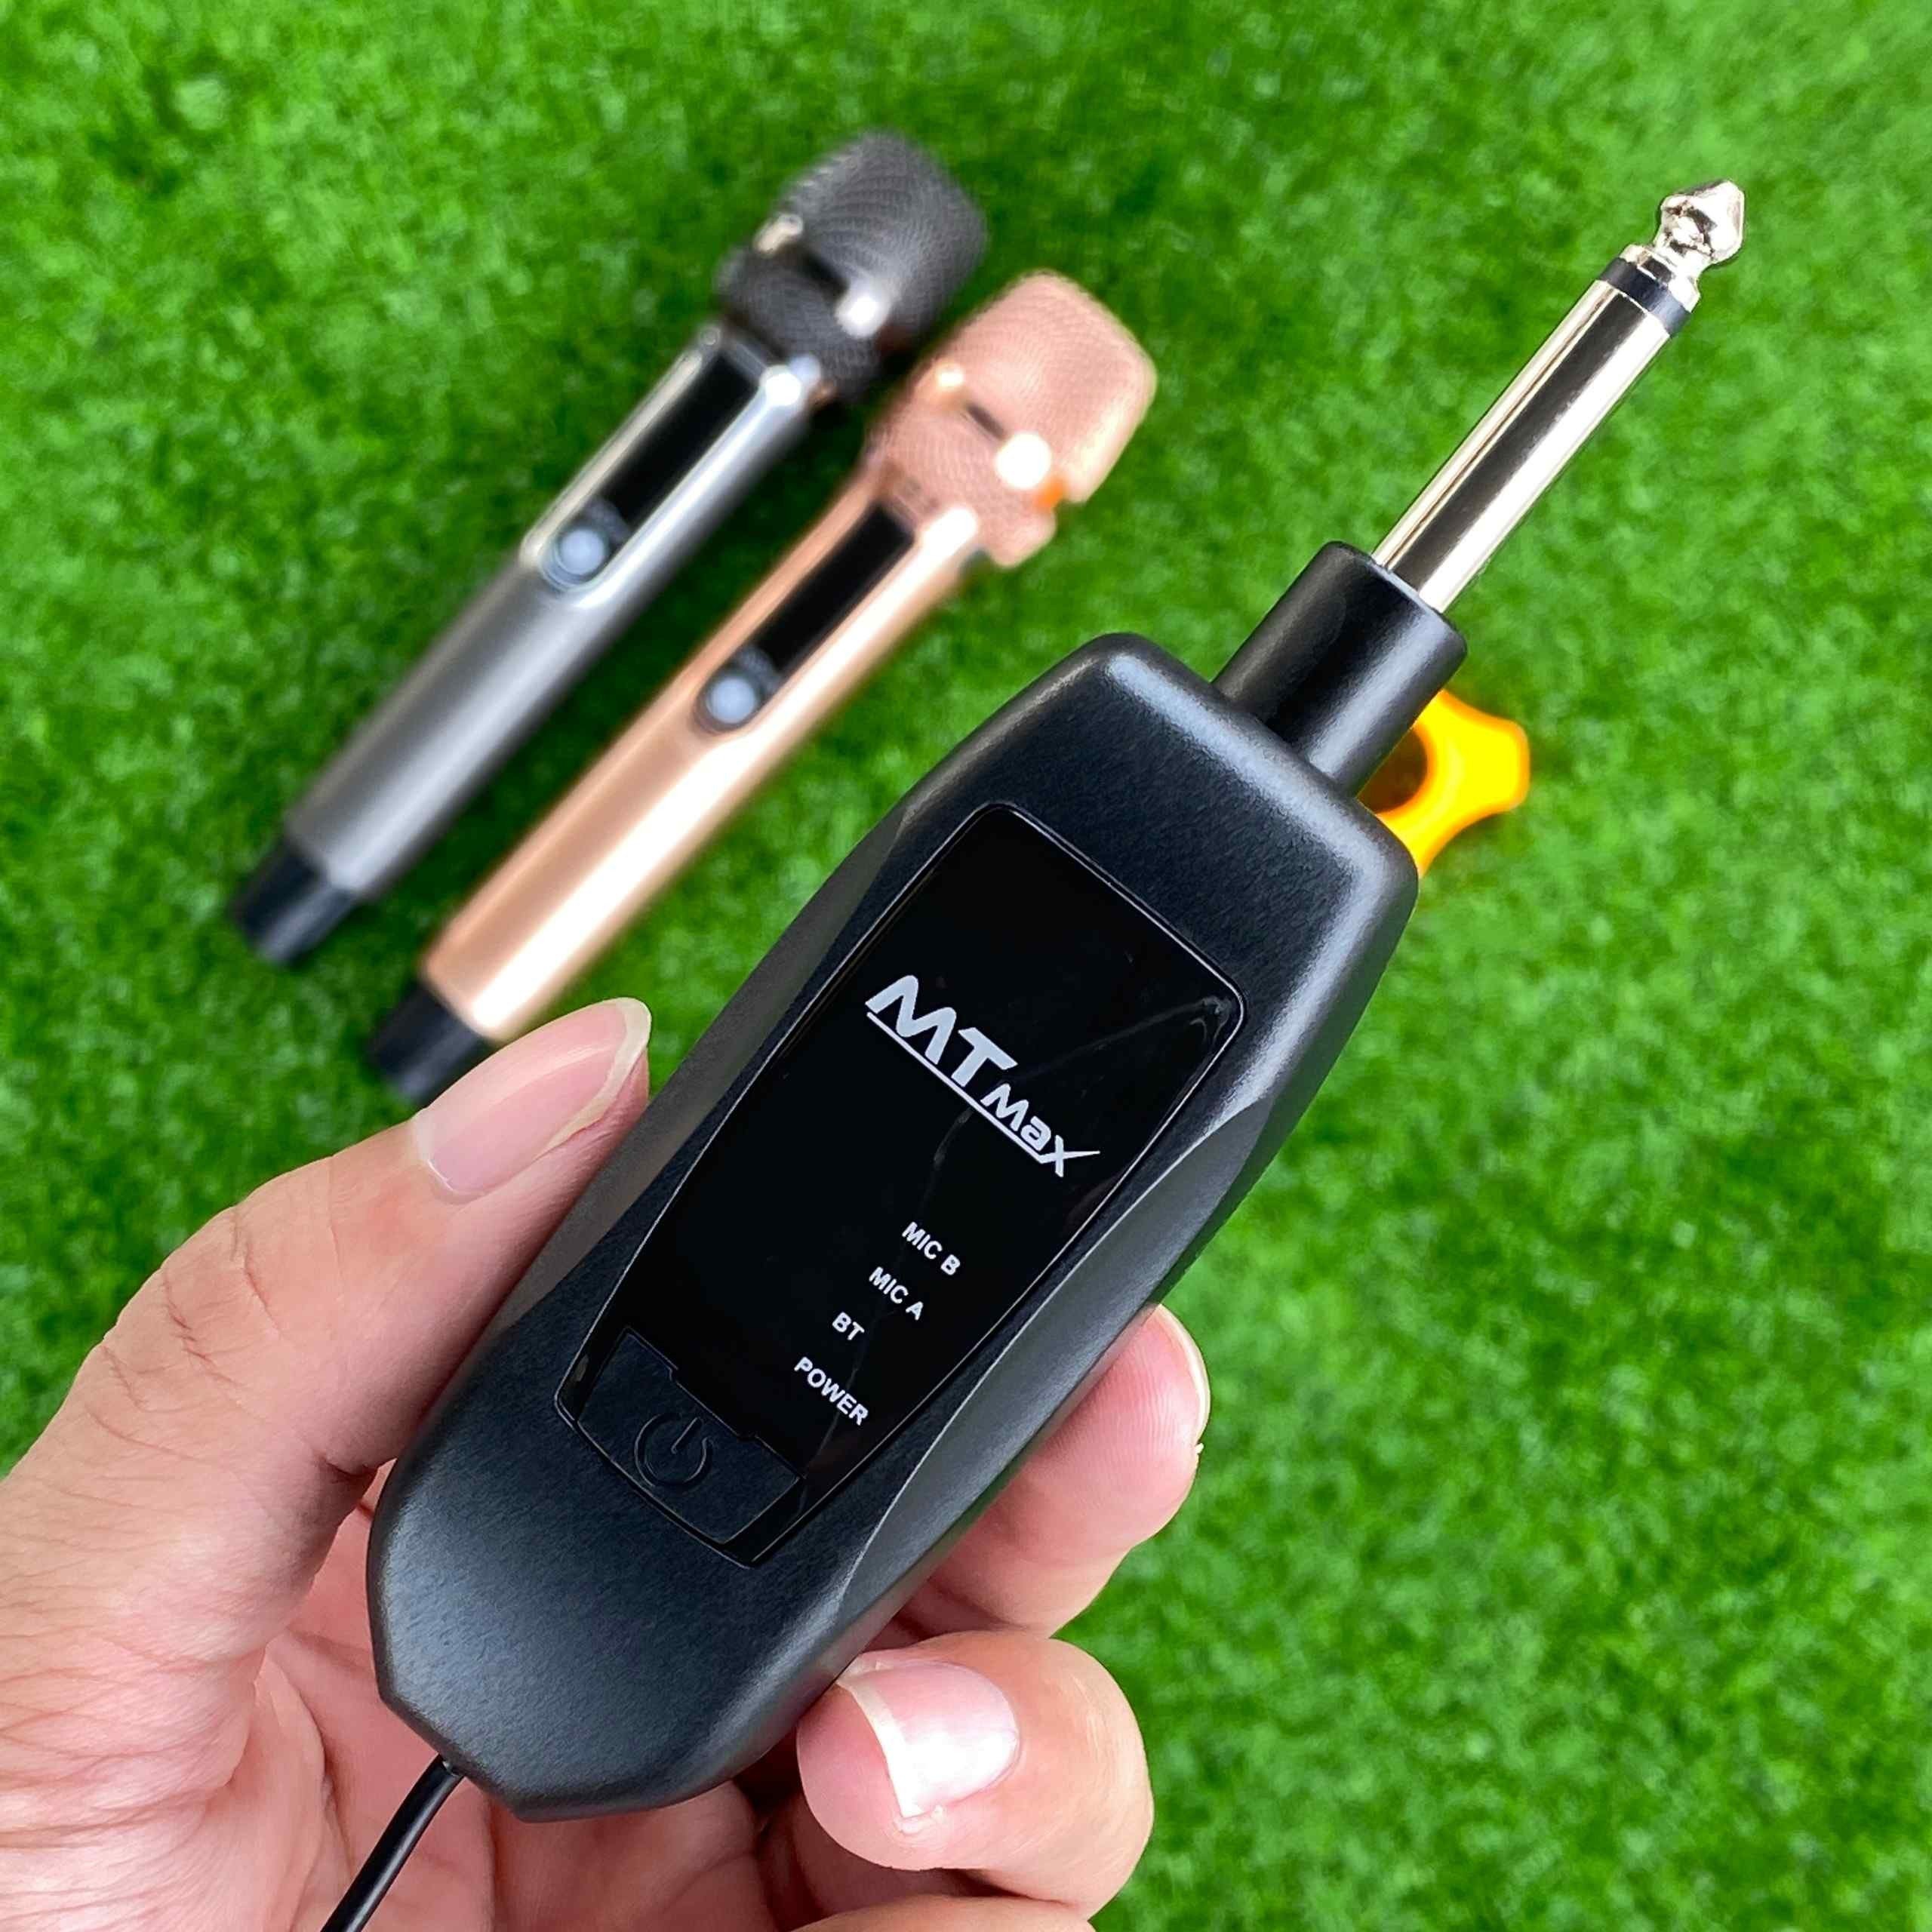 Micro Đa Năng Tích Hợp Bluetooth MTMAX AK96 Cao Cấp – Biến Loa Amply Thường Thành Thiết Bị Bluetooth Thông Minh